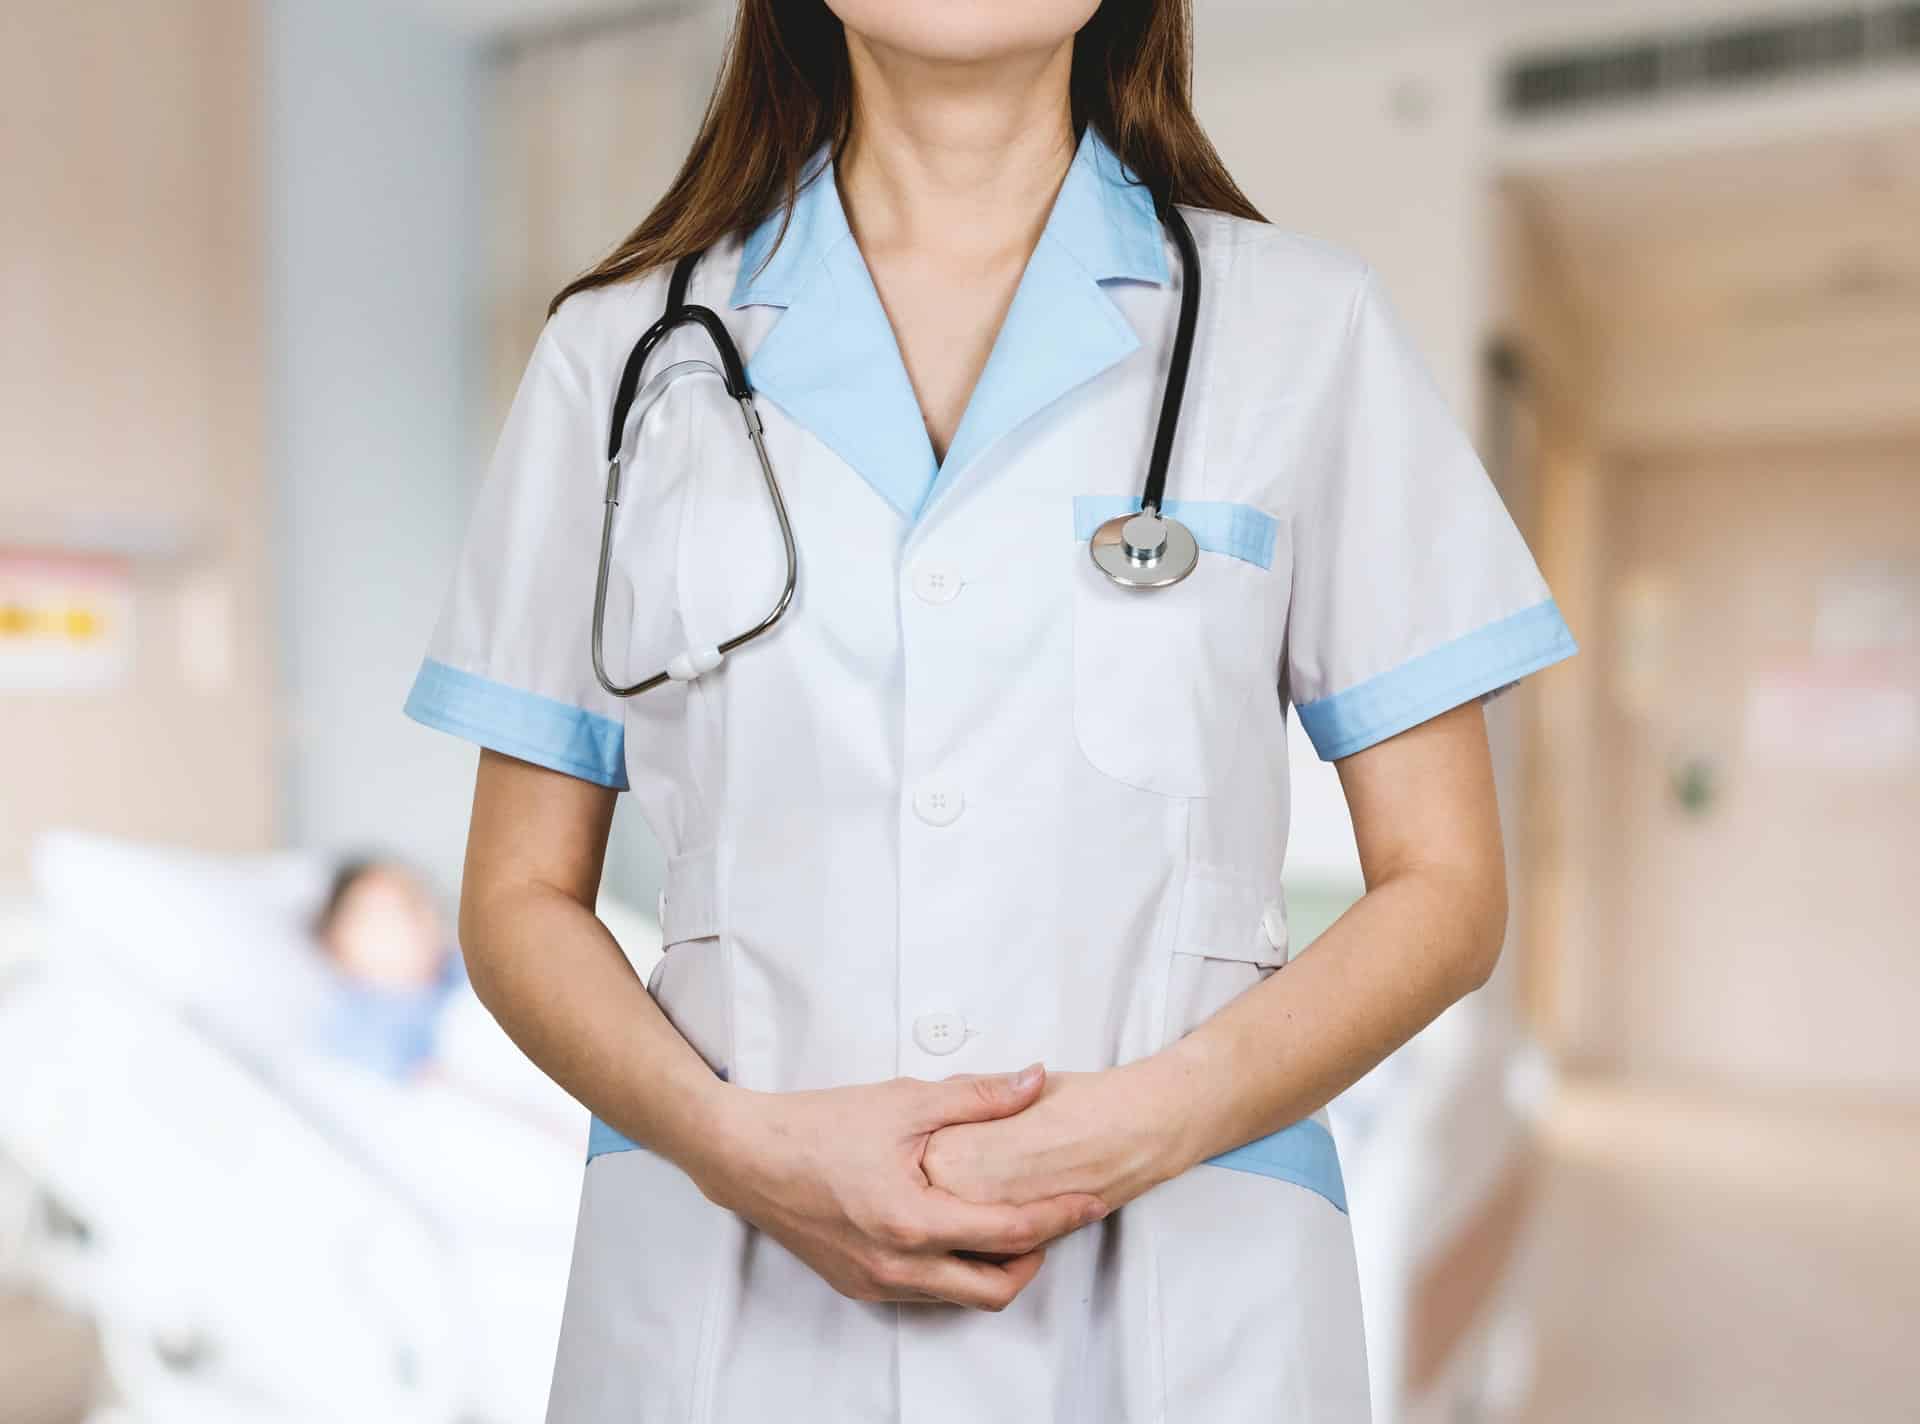 6 Great Jobs Nurses Header Image